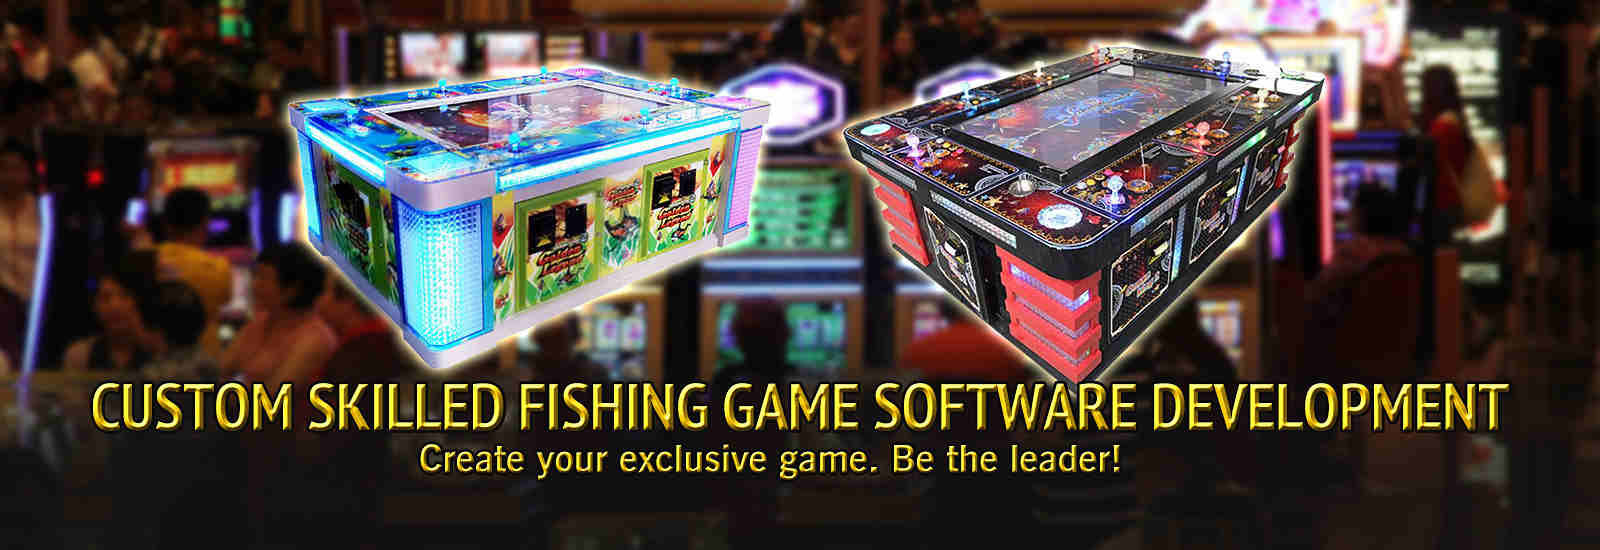 kualitas Fish Hunter Arcade Machine pabrik